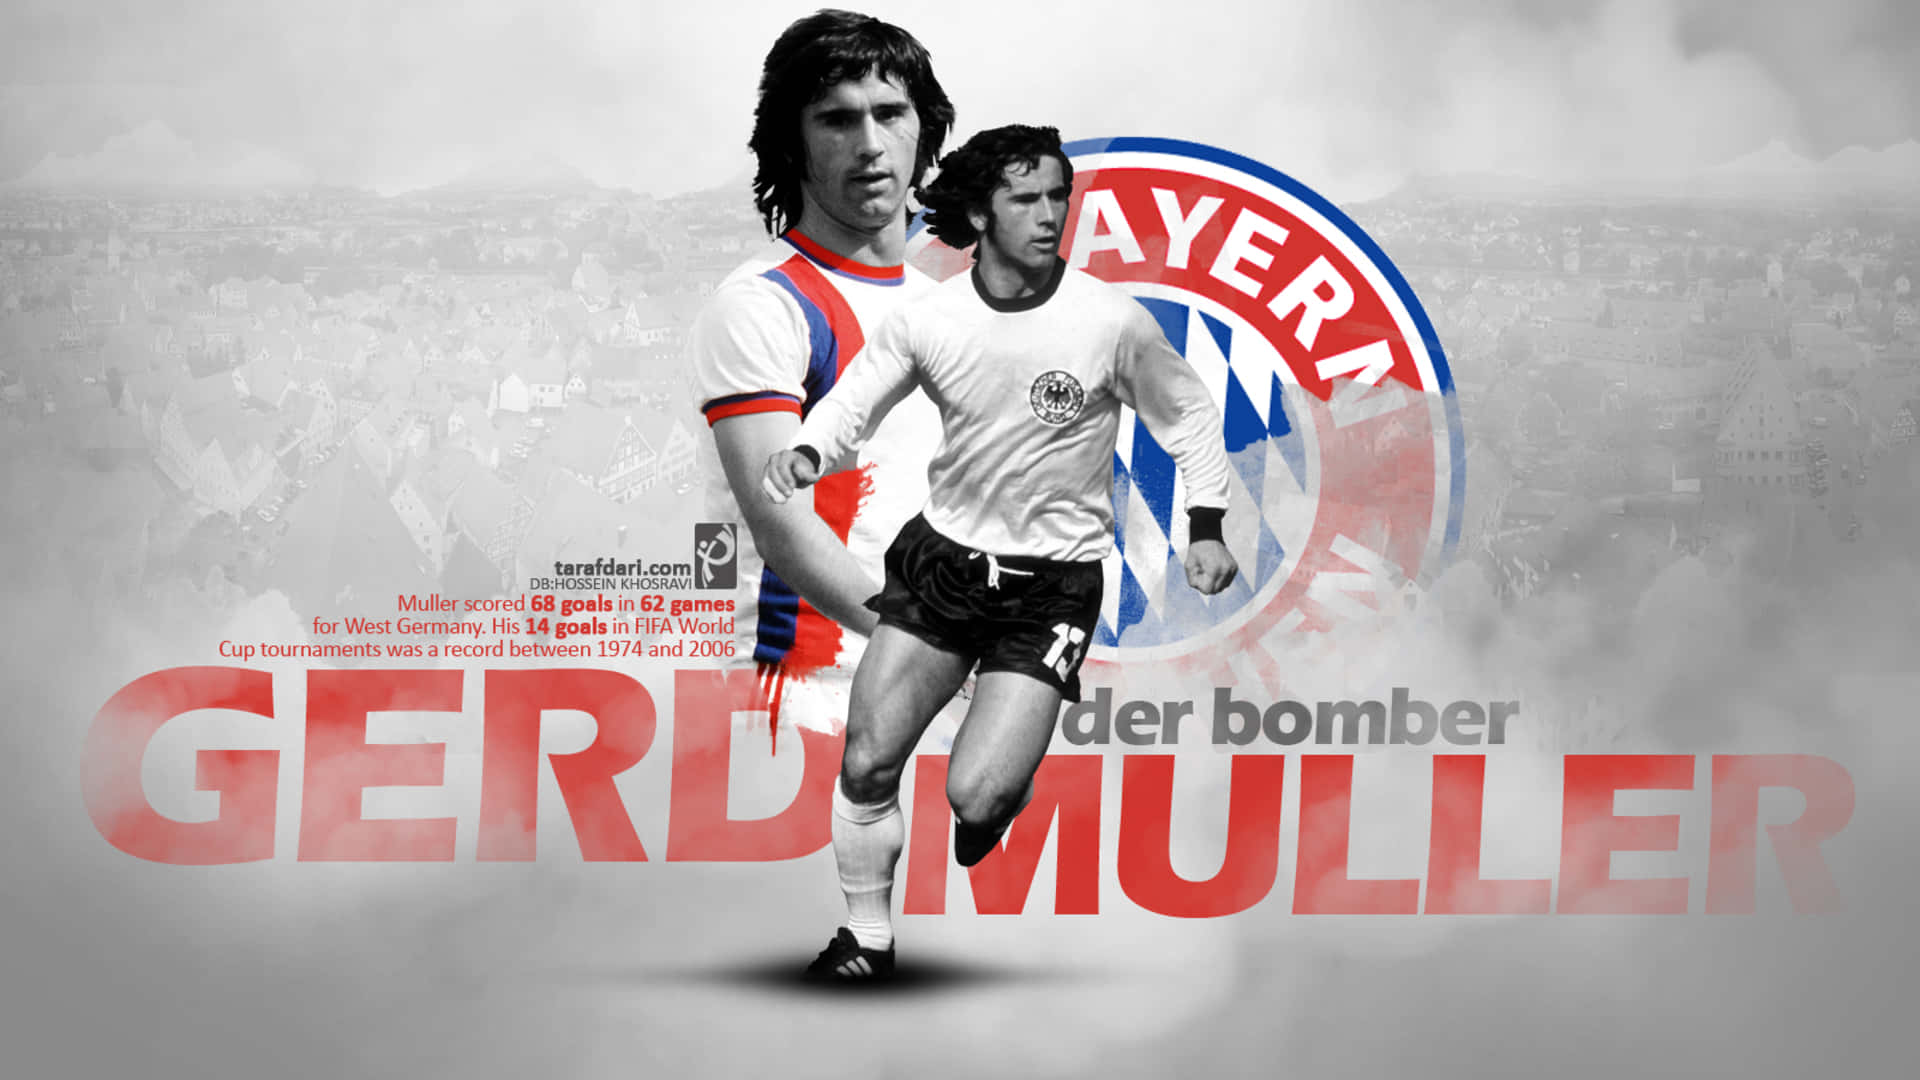 Gerdmuller Bayern Munich Affisch. Wallpaper